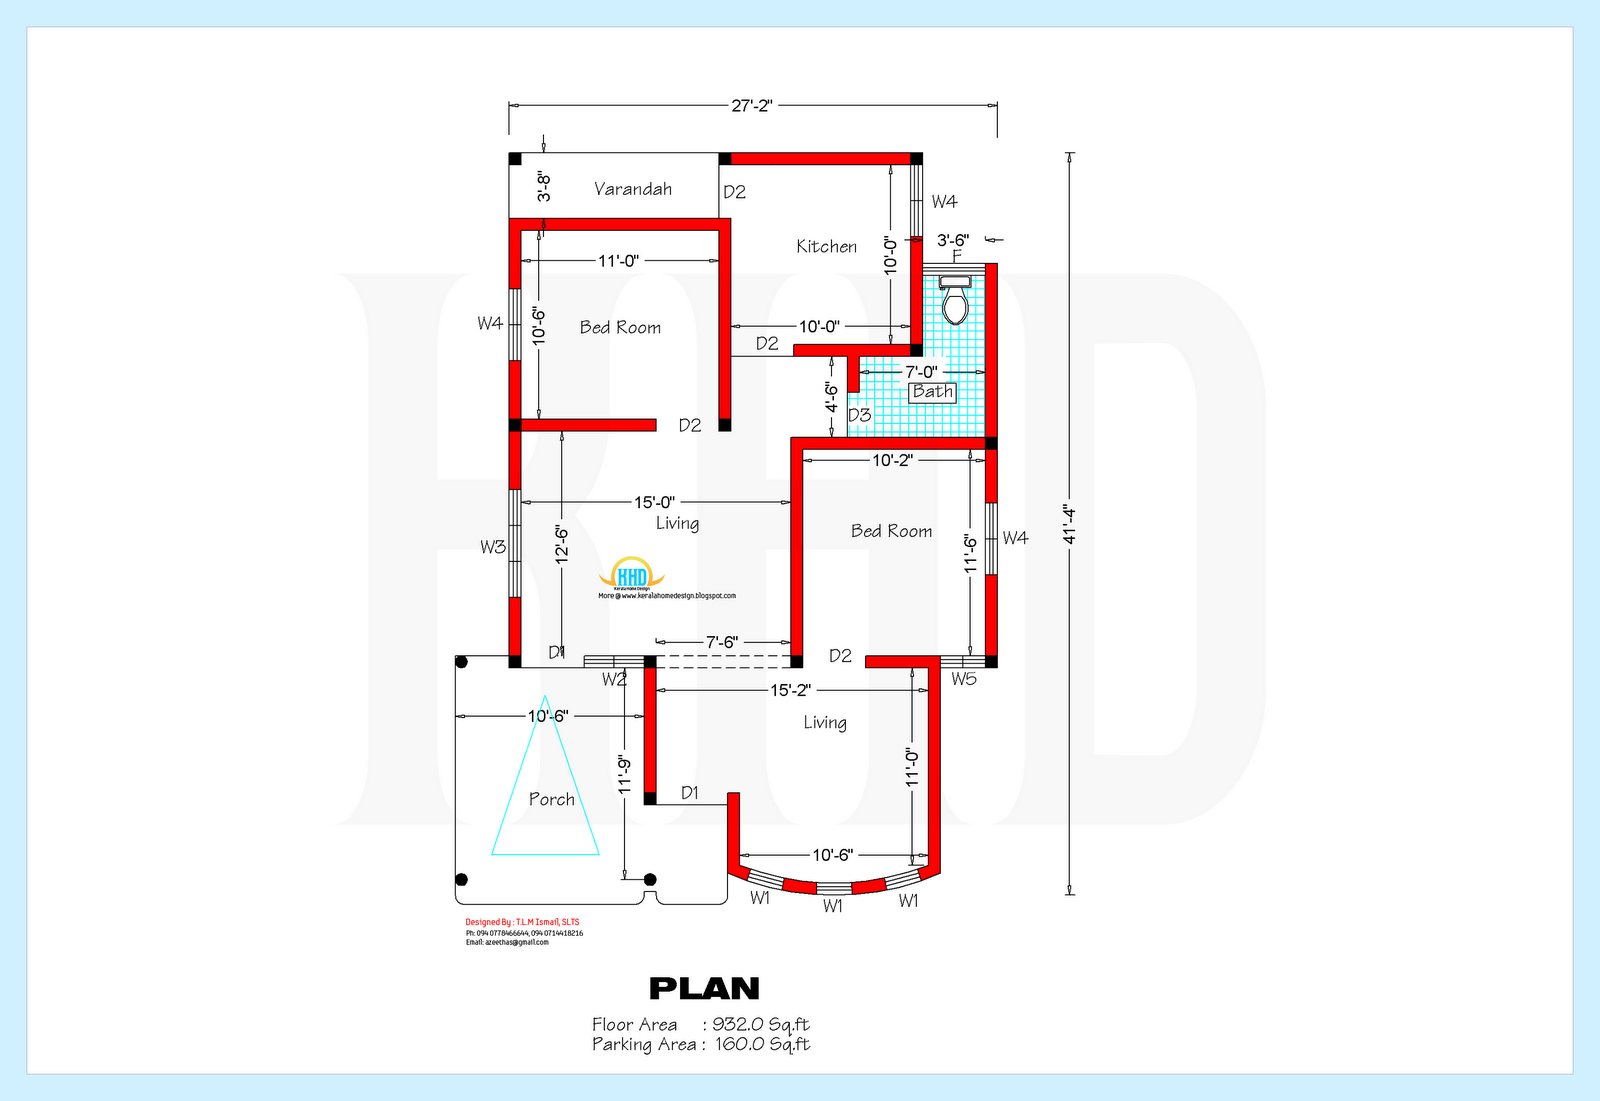 Housing business plan sample